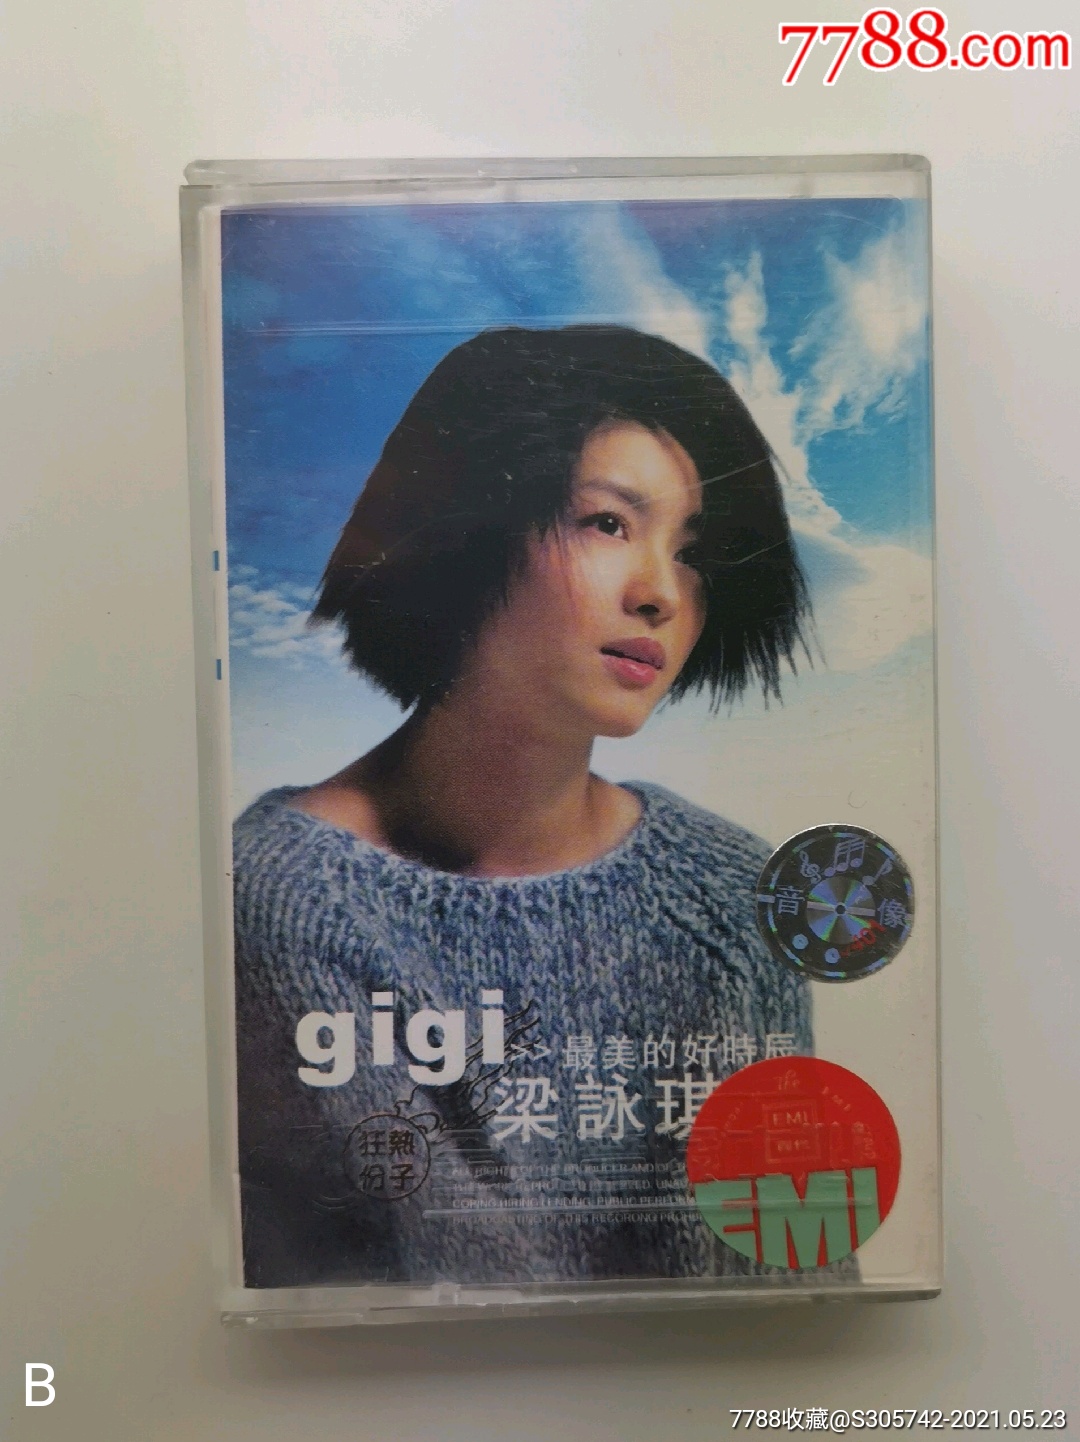 香港gigi歌手图片